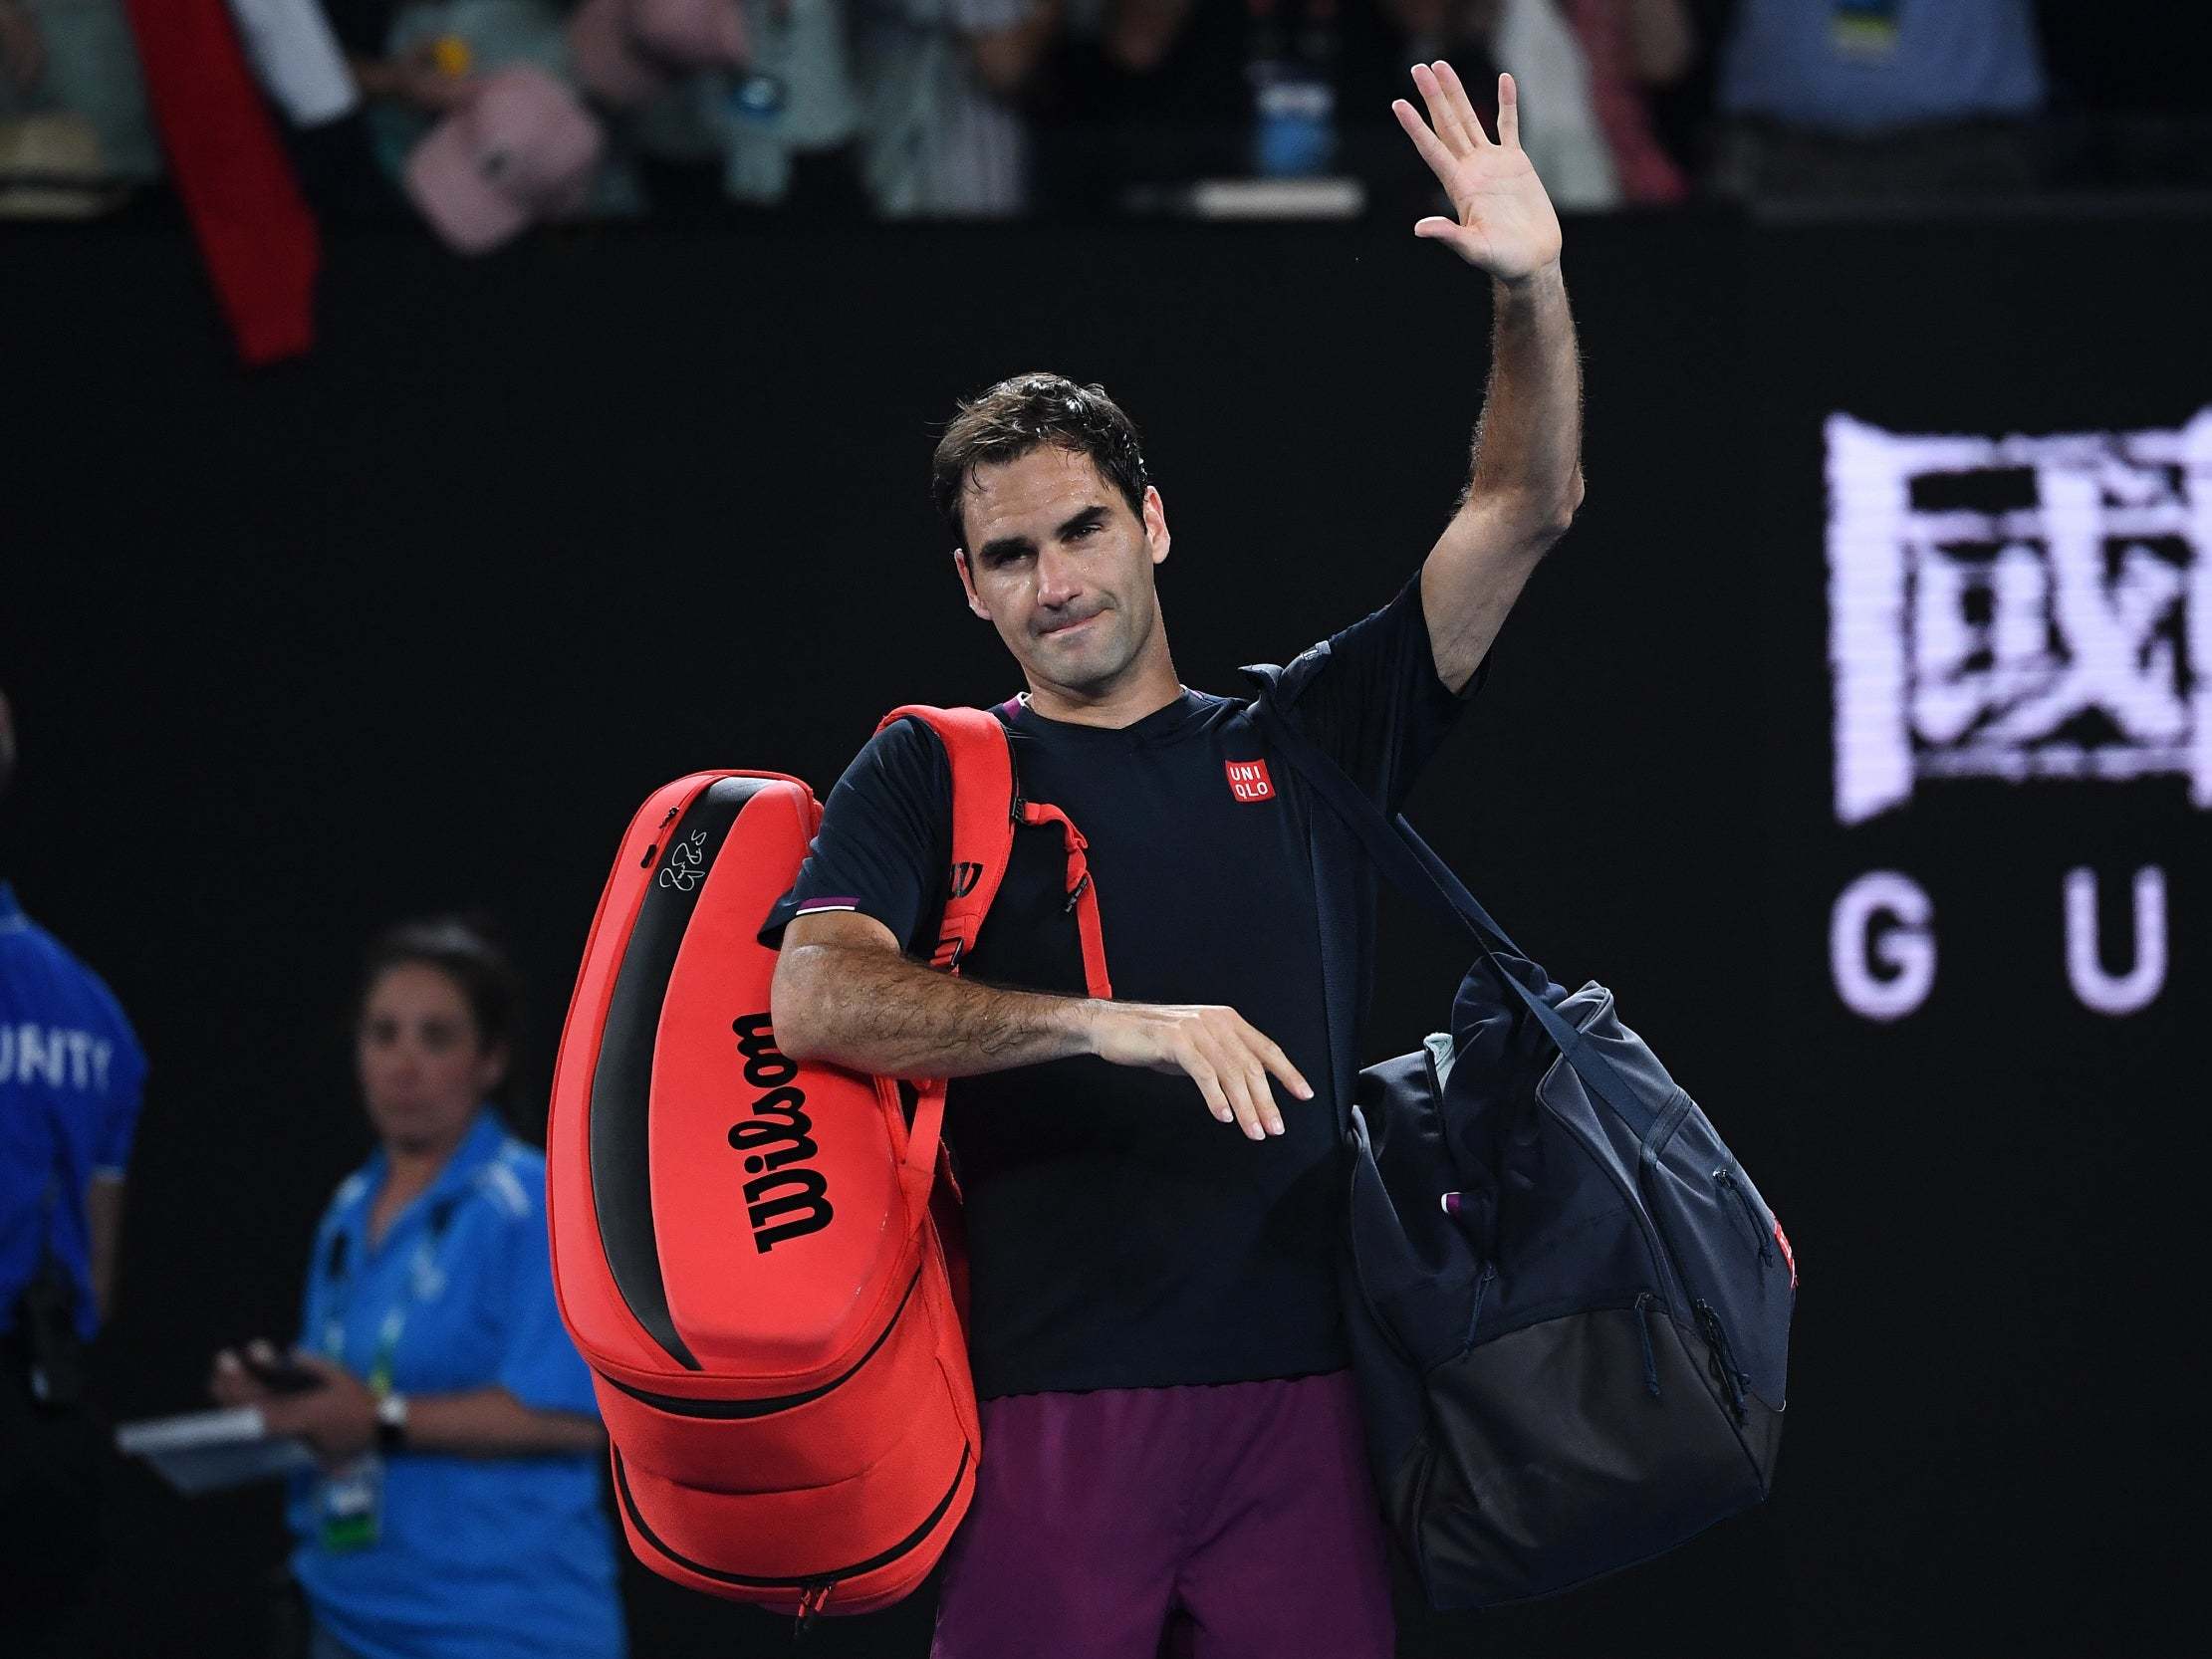 Roger Federer walks off after defeat